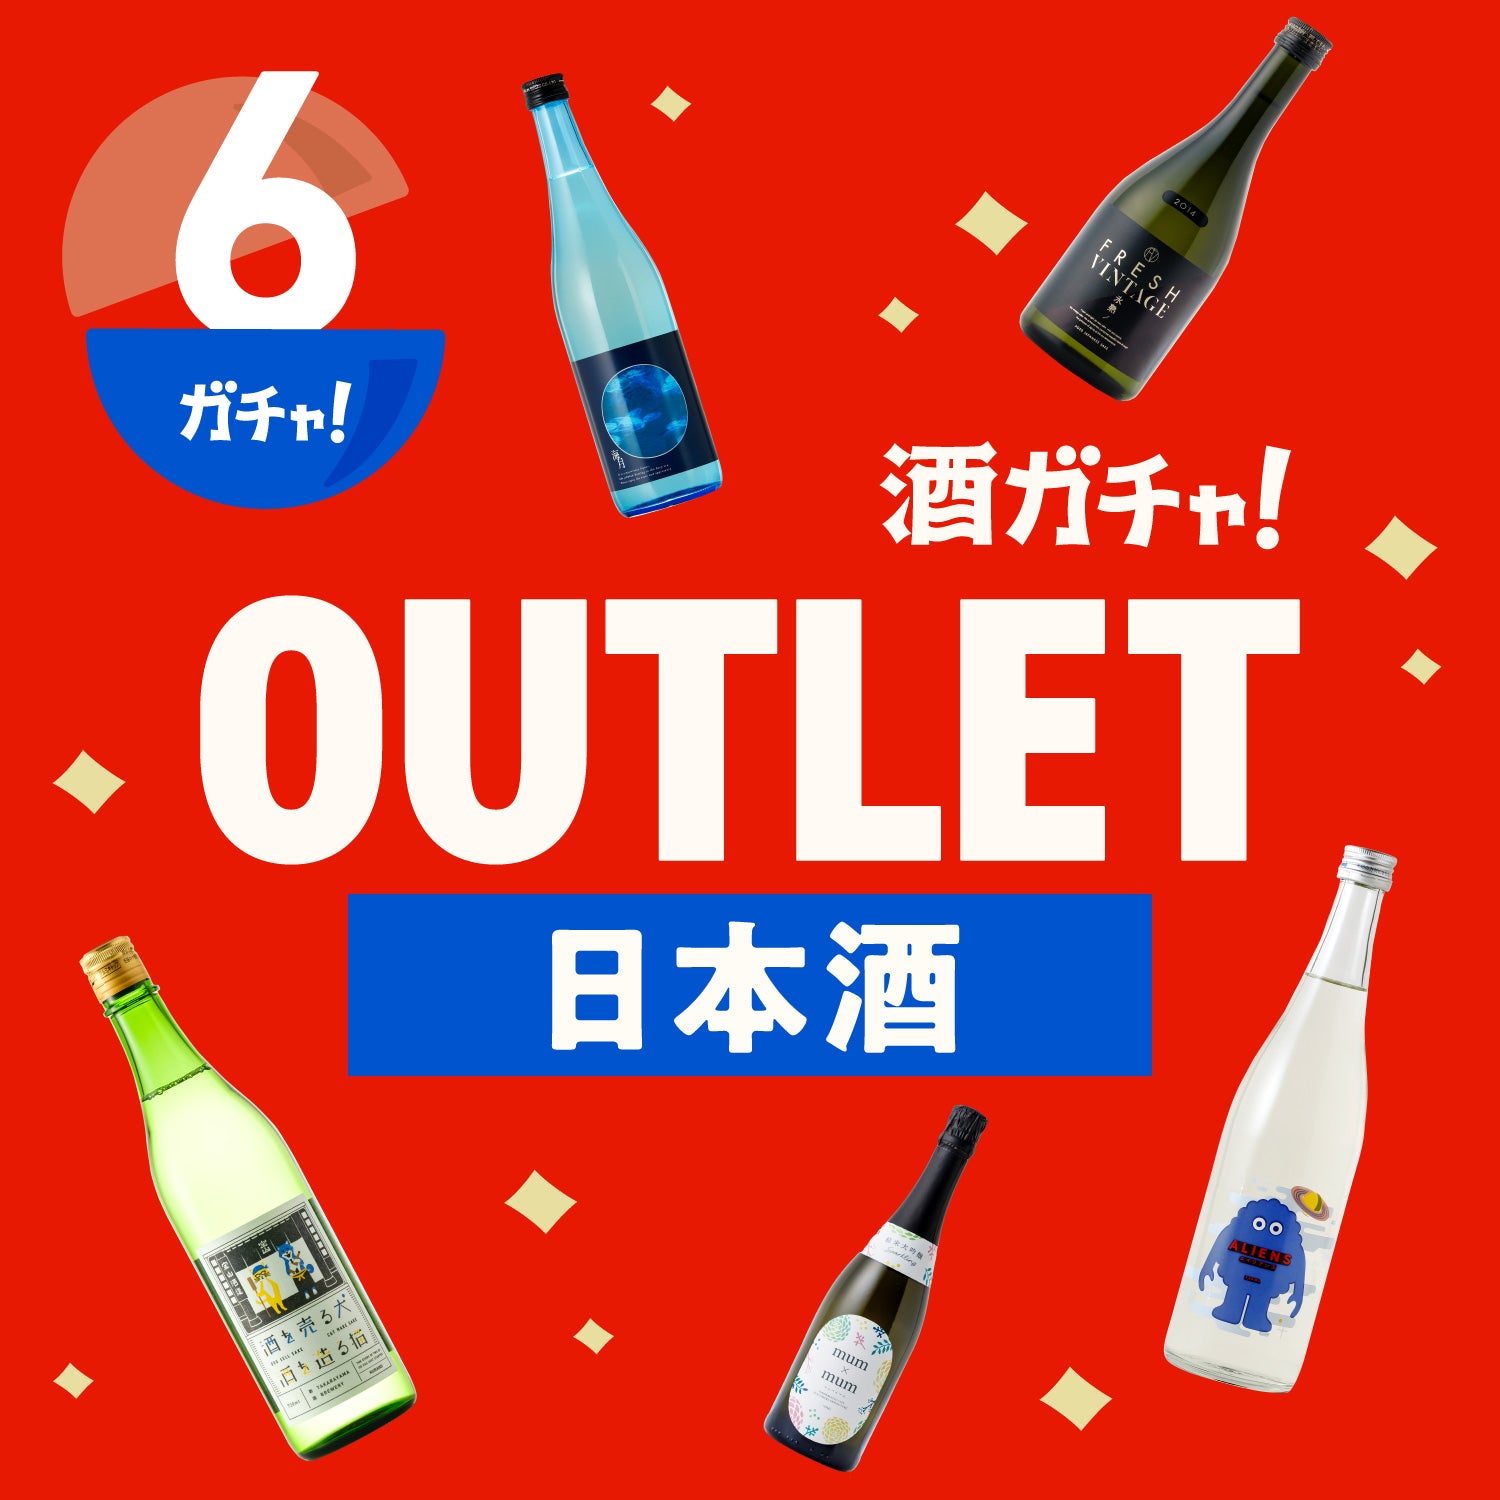 6本】酒ガチャアウトレット -日本酒- | のセット | 酒・日本酒の通販